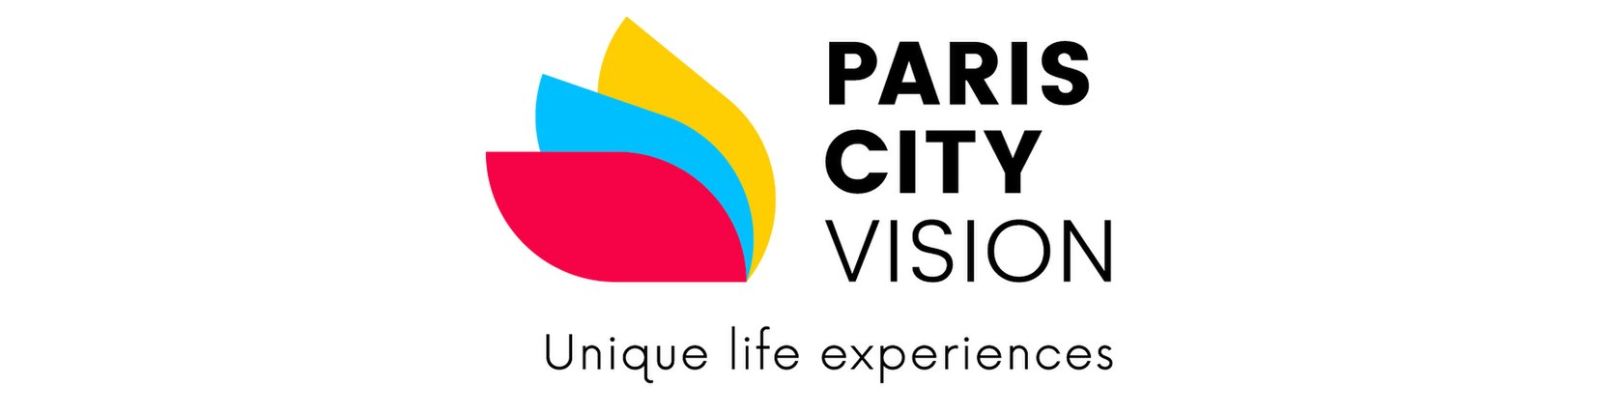 Paris City Vision é confiável? Conheça todos os detalhes!